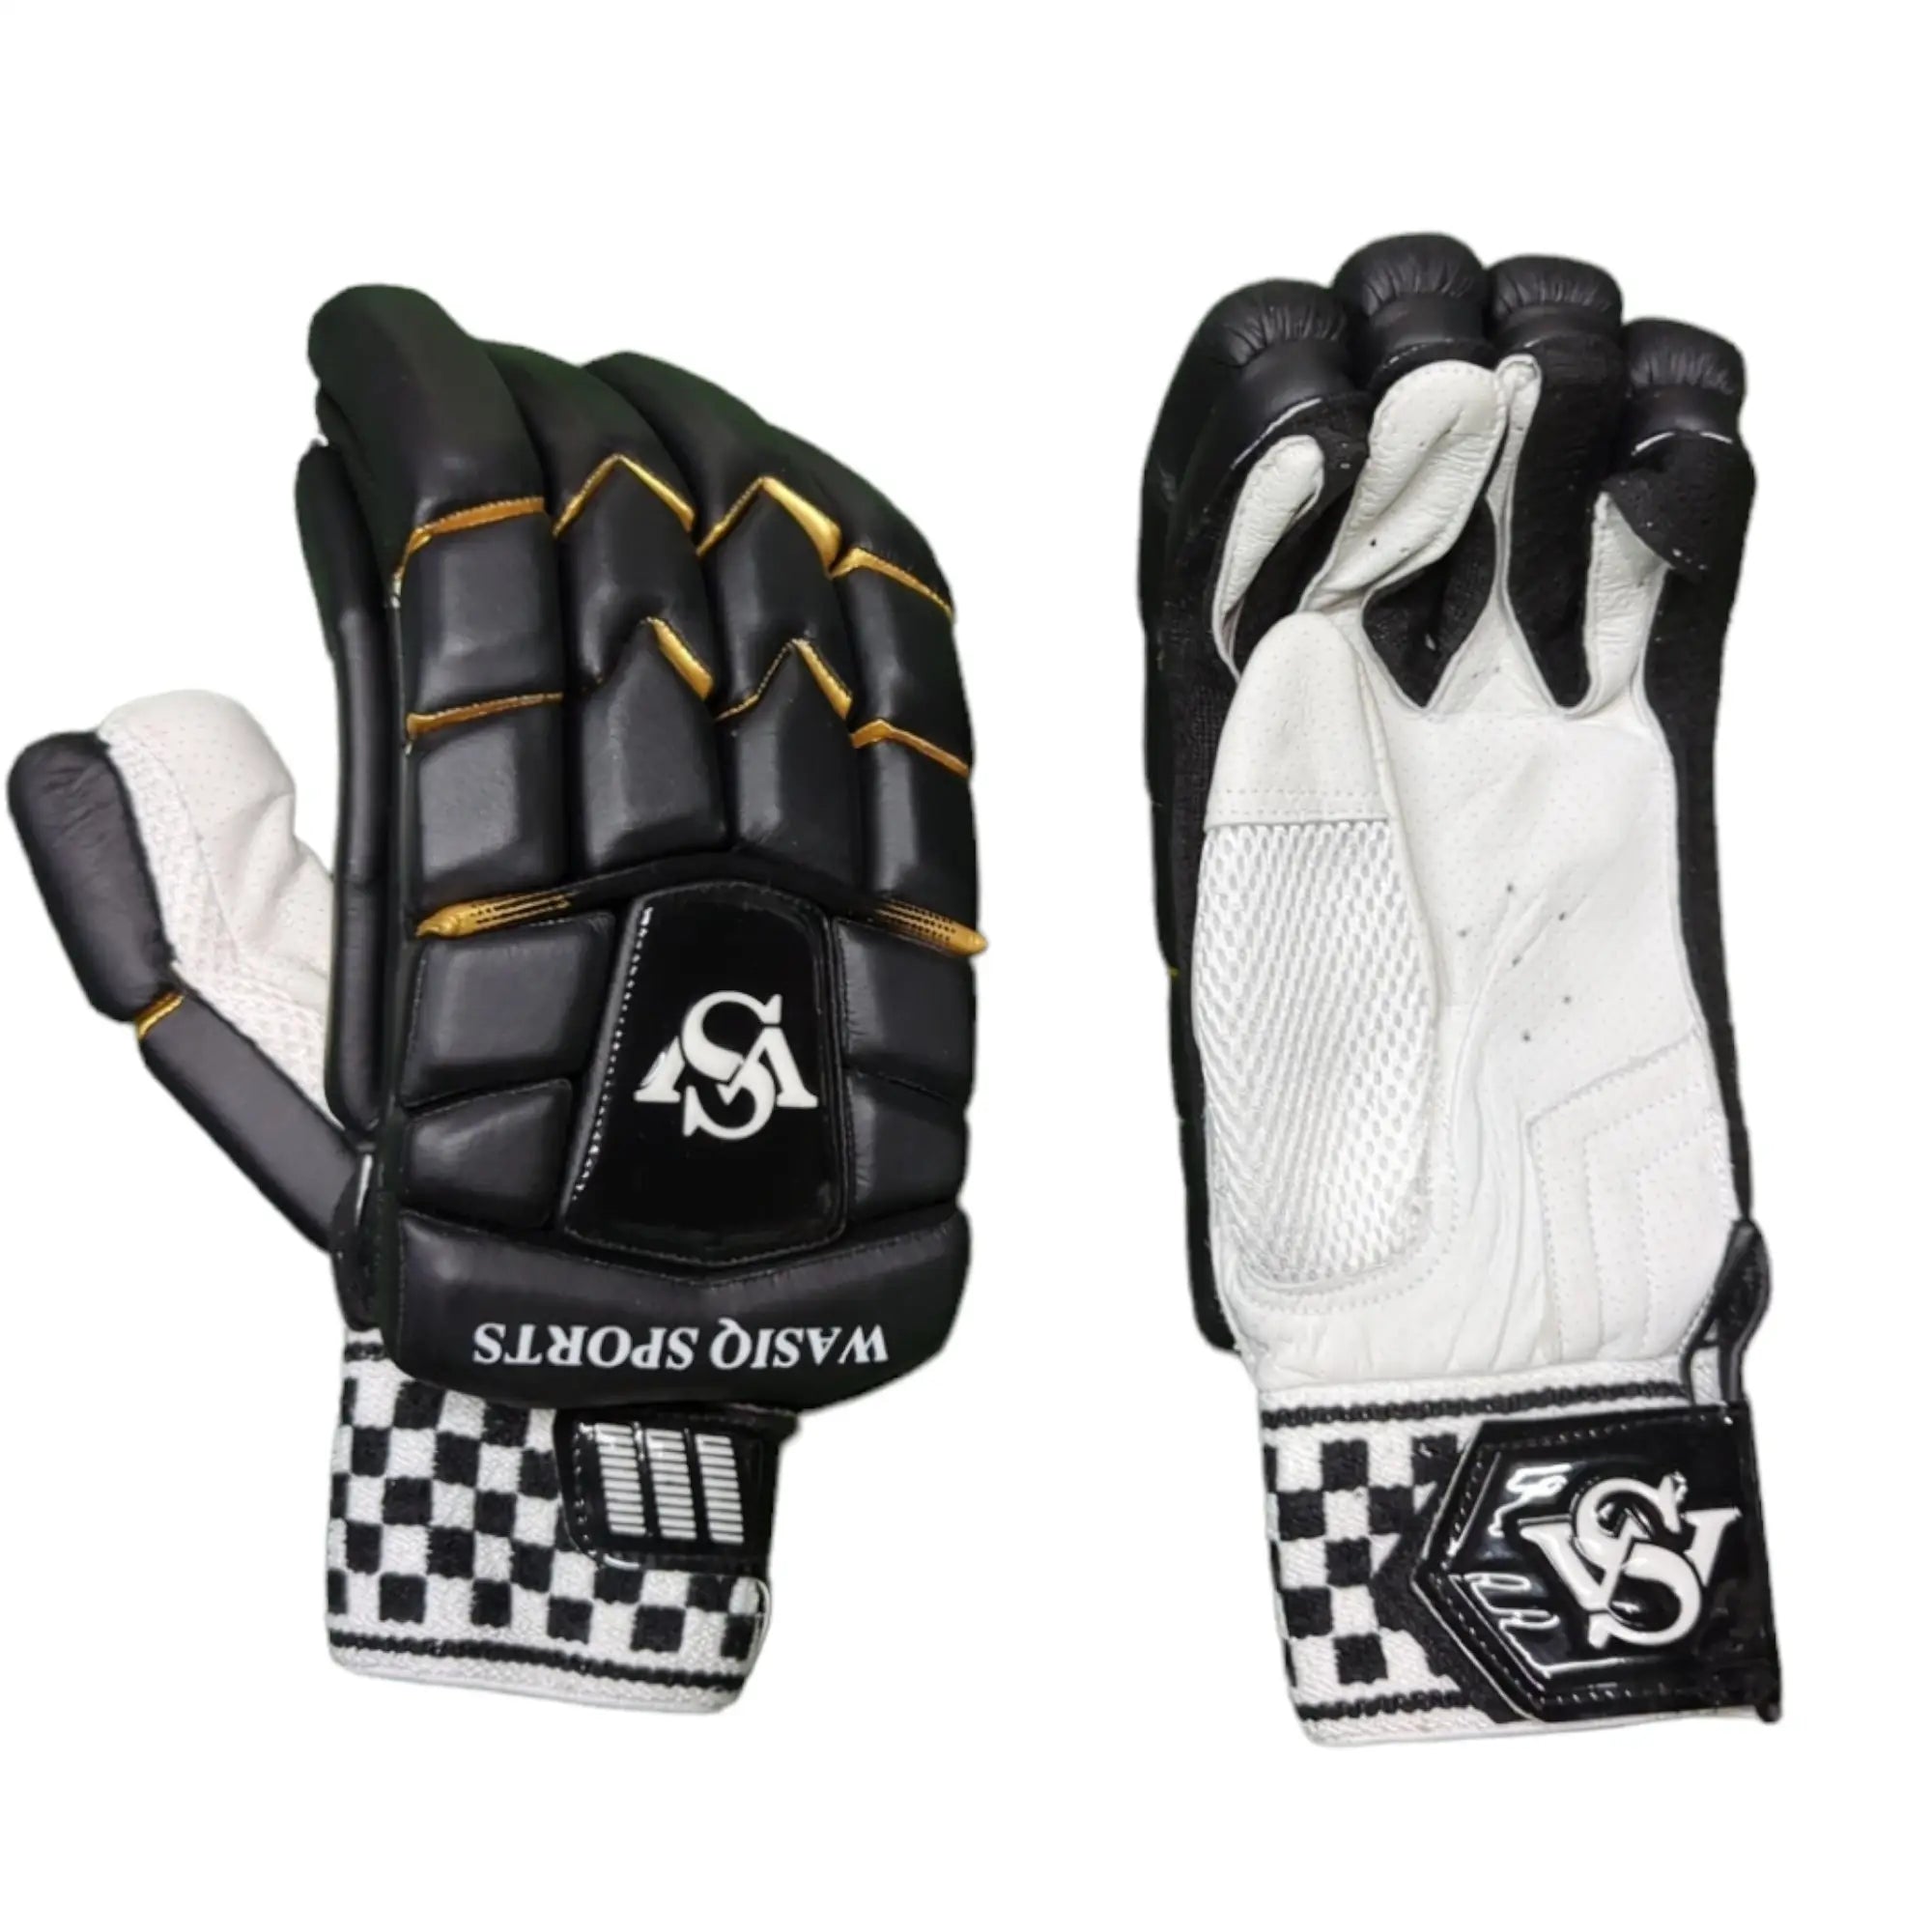 WS Pro Cricket Gloves Black - Adult RH - GLOVE - BATTING